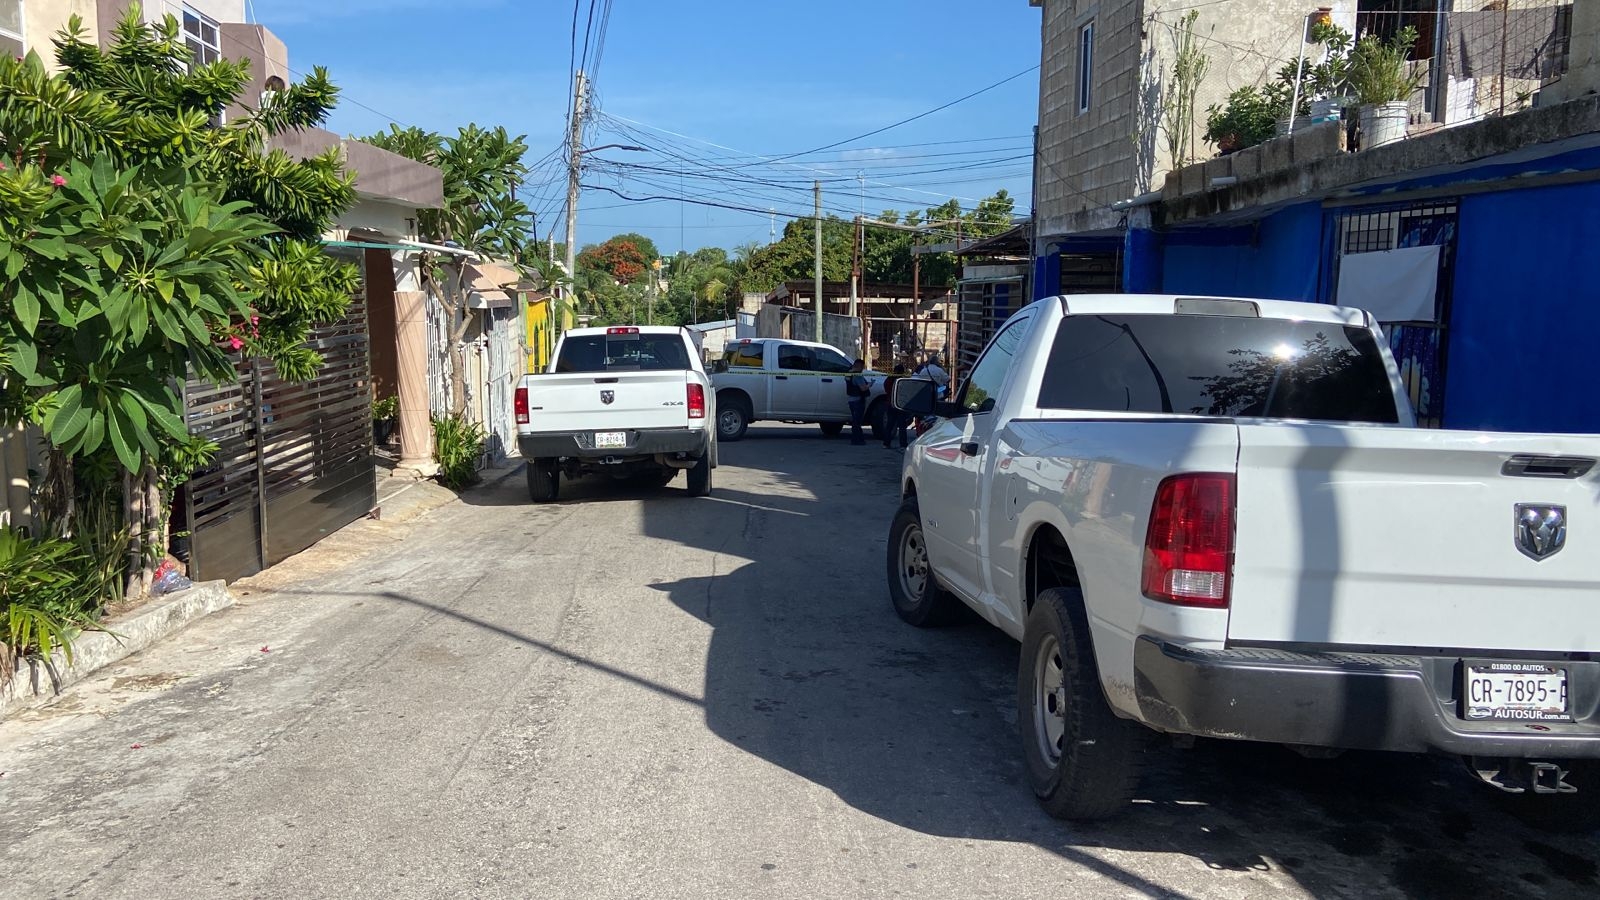 Balean a un hombre en la puerta de su casa en Campeche: EN VIVO